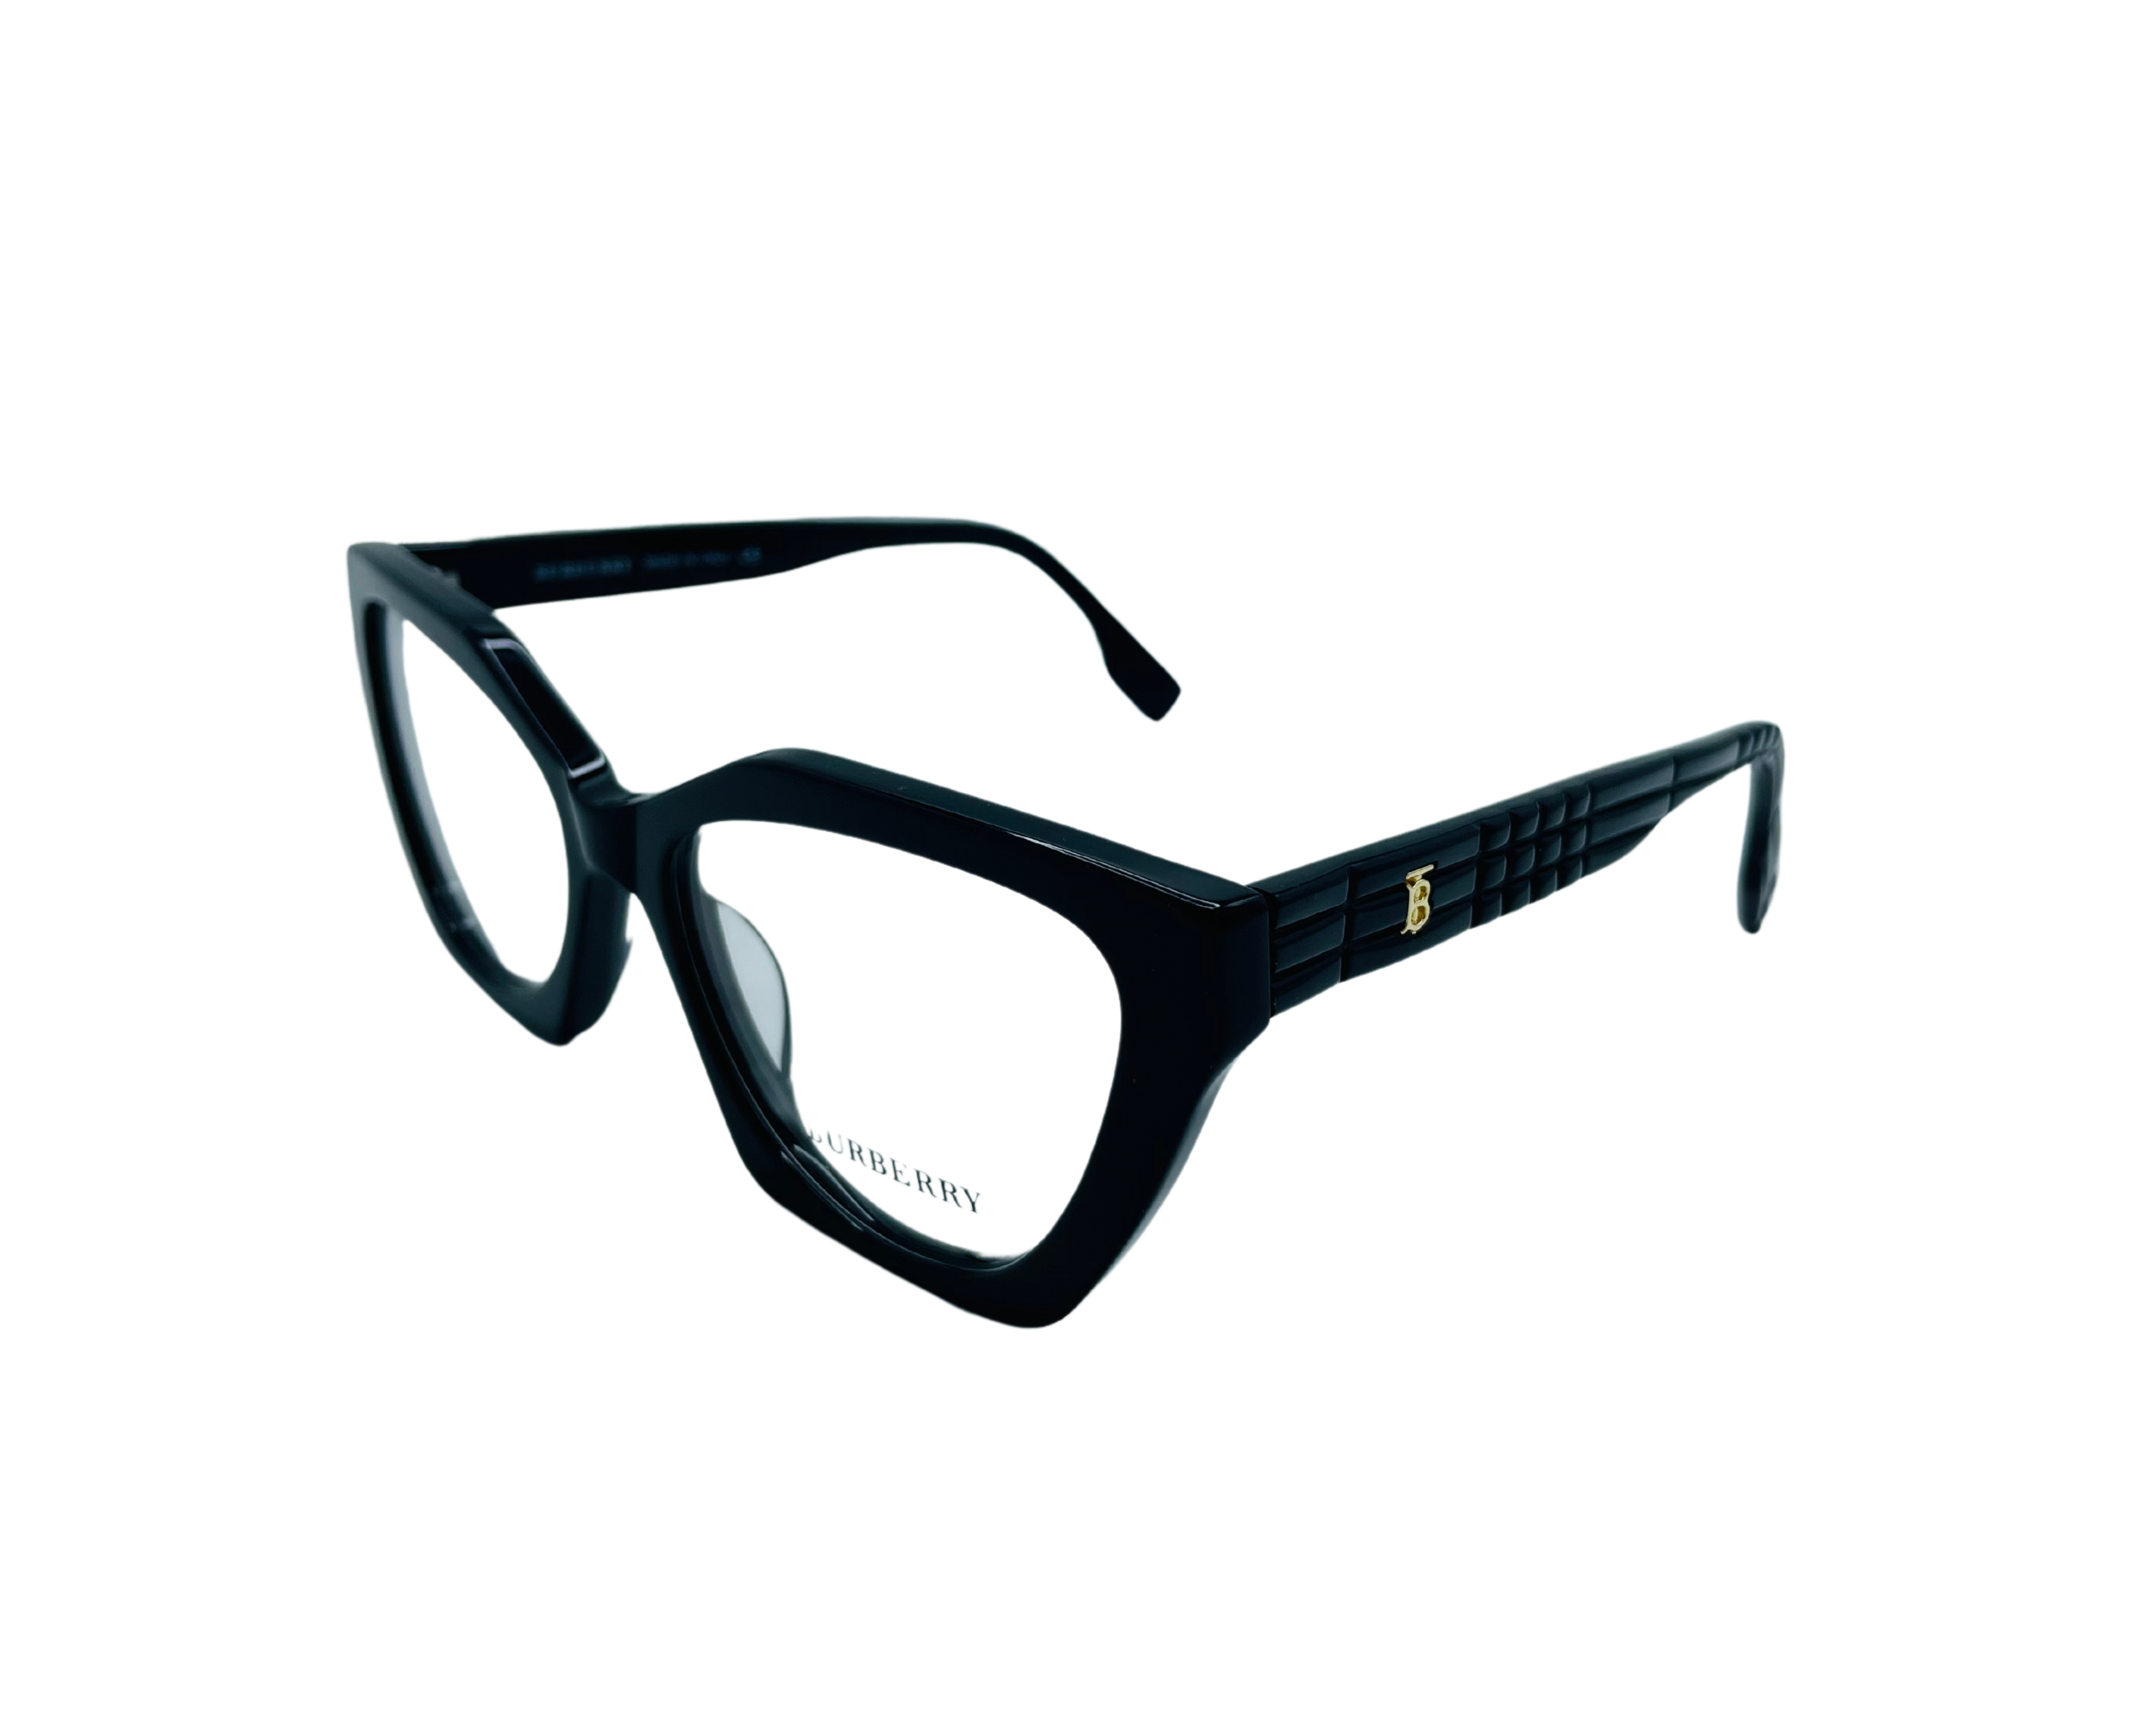 NS Luxury - 4383 - Black - Eyeglasses